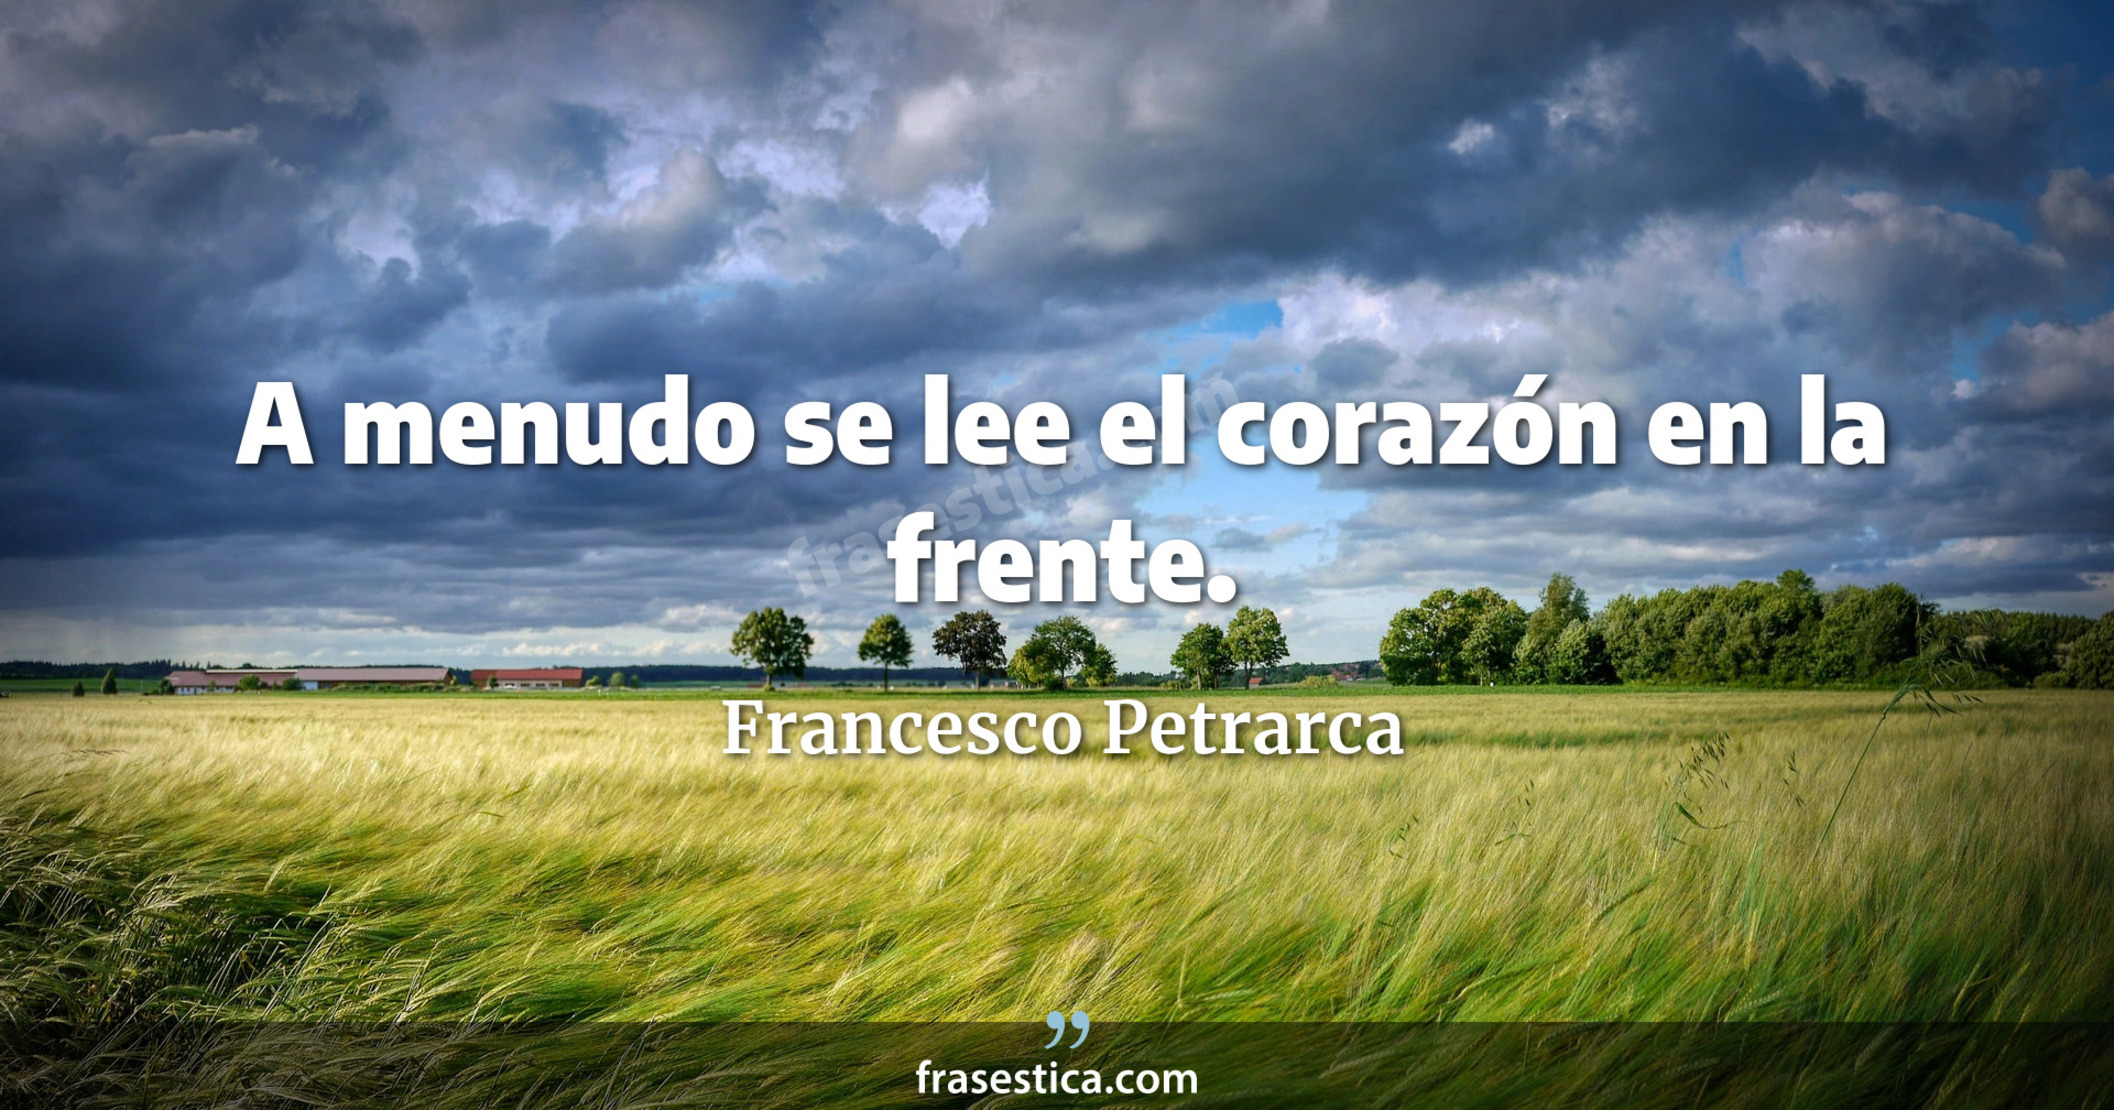 A menudo se lee el corazón en la frente. - Francesco Petrarca